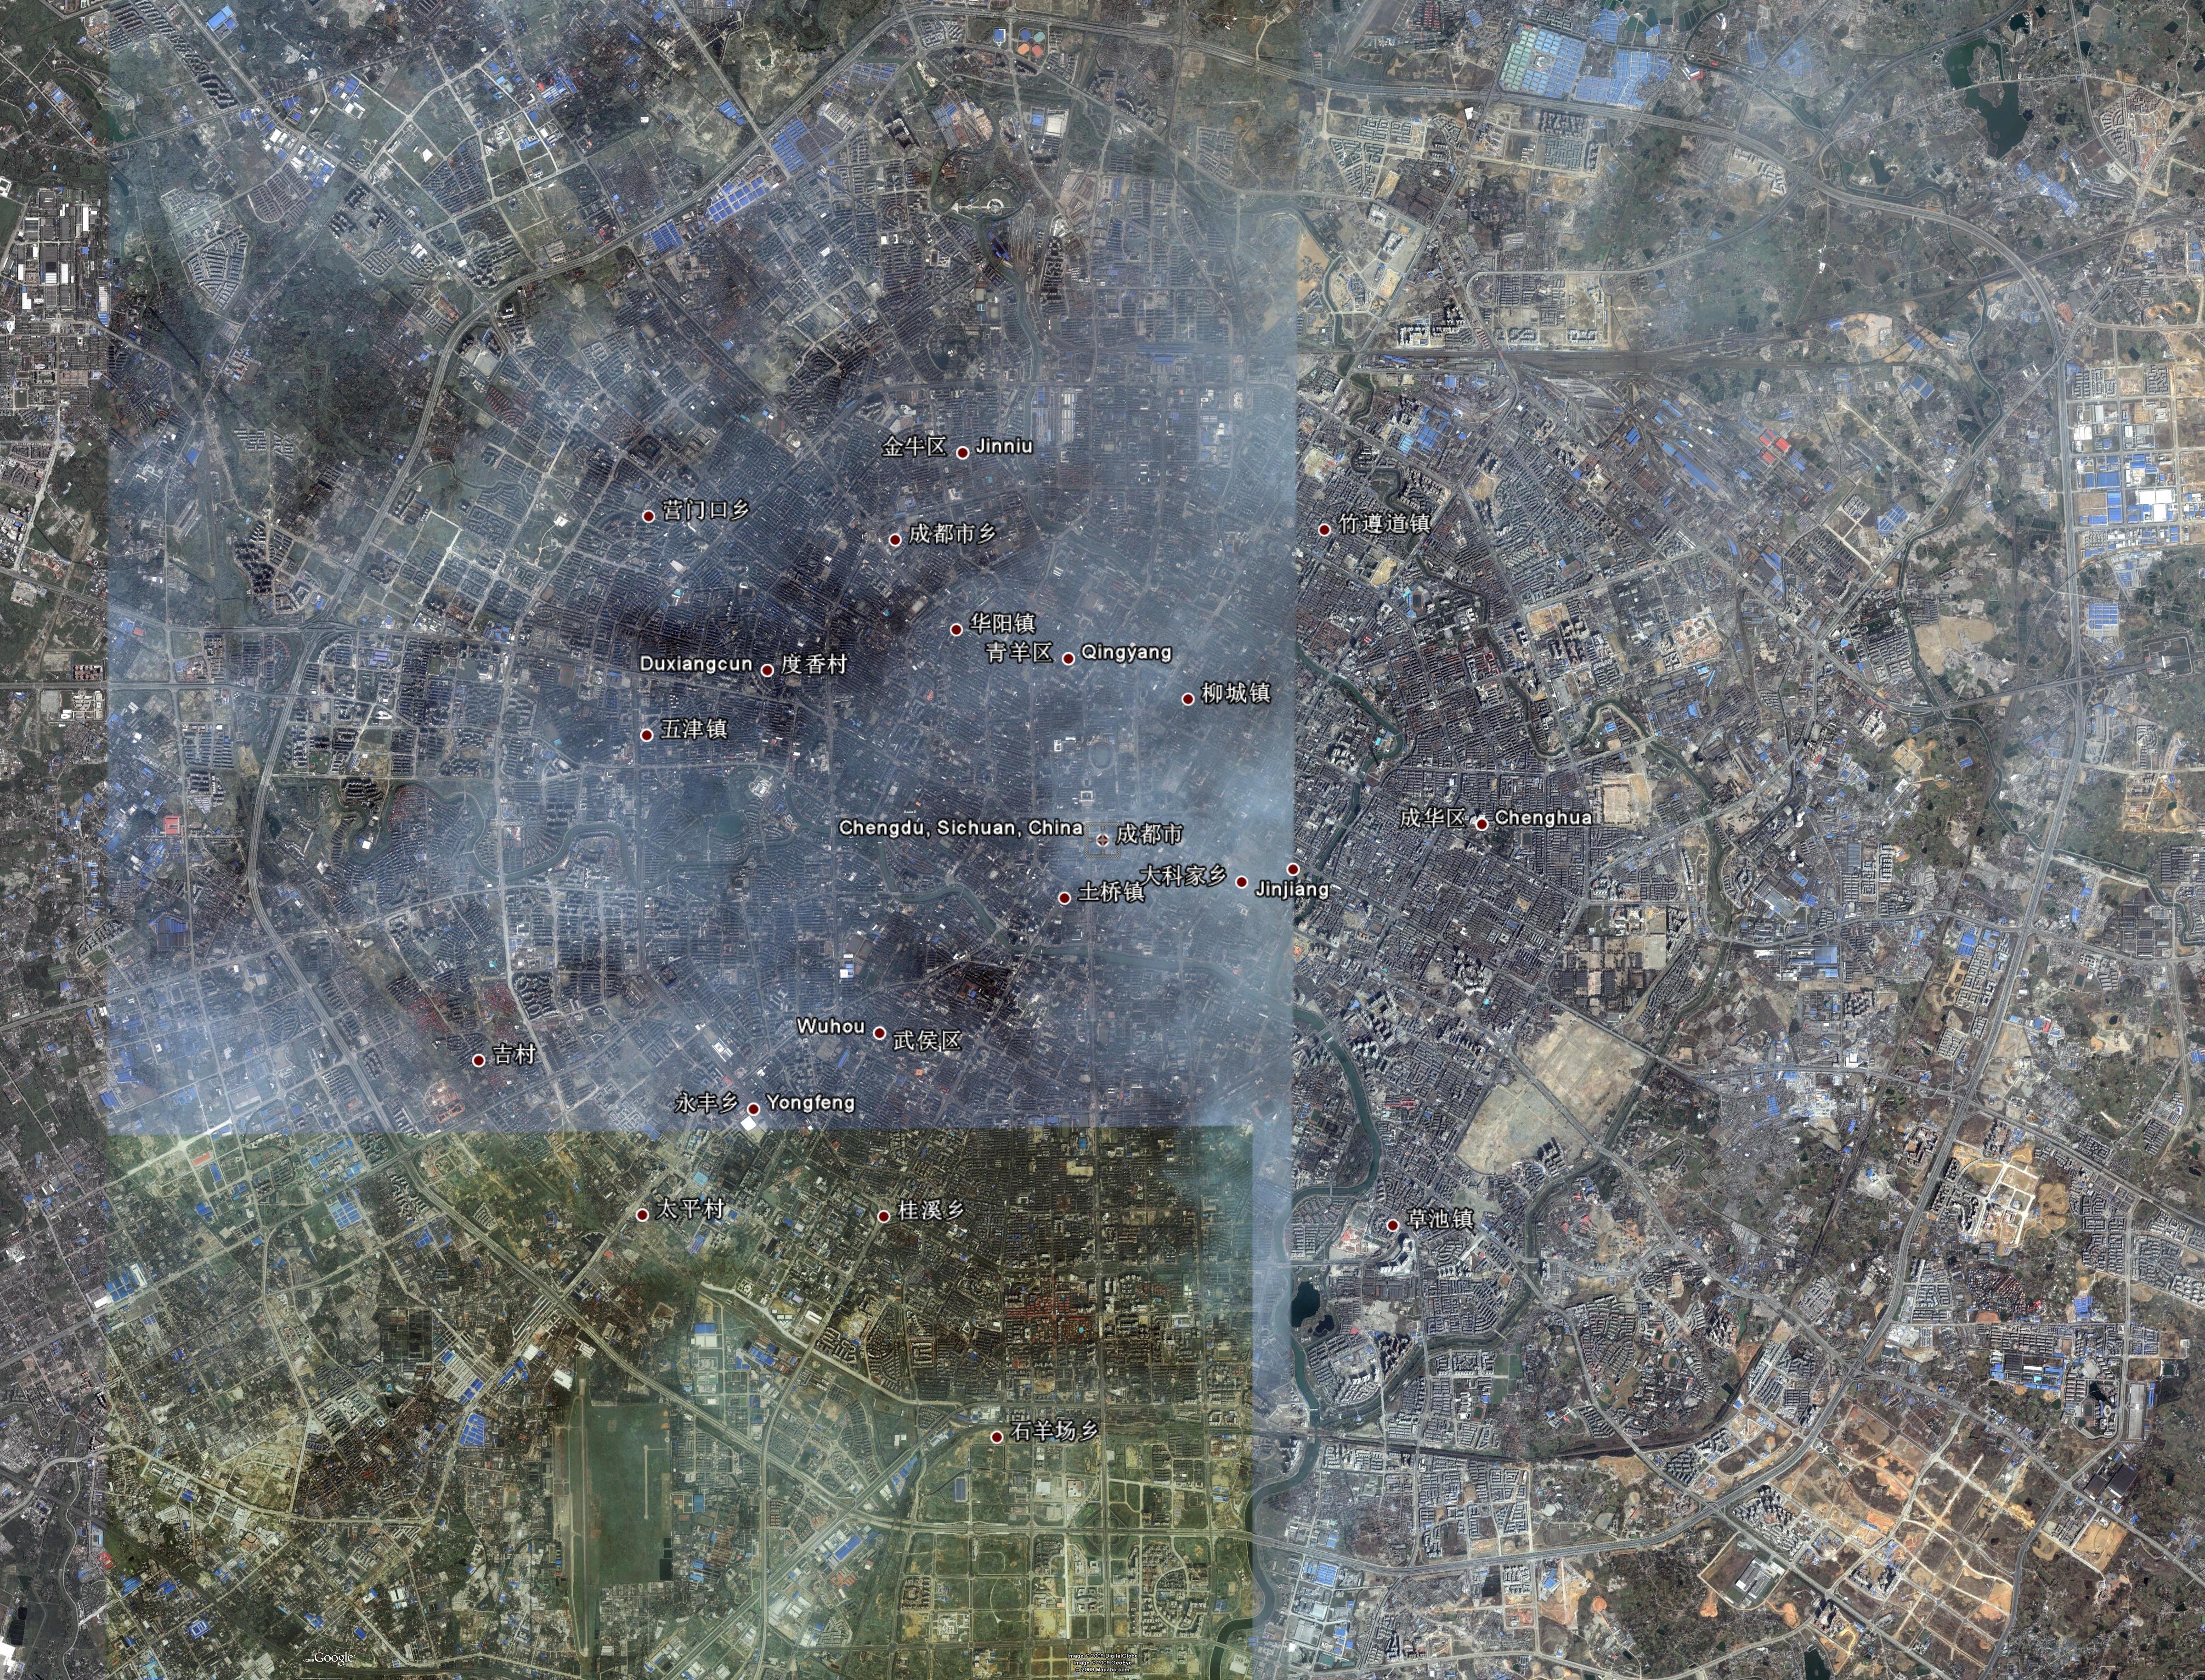 高分一号2米分辨率同一林地不同时期卫星影像对比样例 - 『北京揽宇方圆』专业遥感卫星遥感影像数据销售-卫星影像地图公司 - 网站首页 - 北京揽宇方圆信息技术有限公司